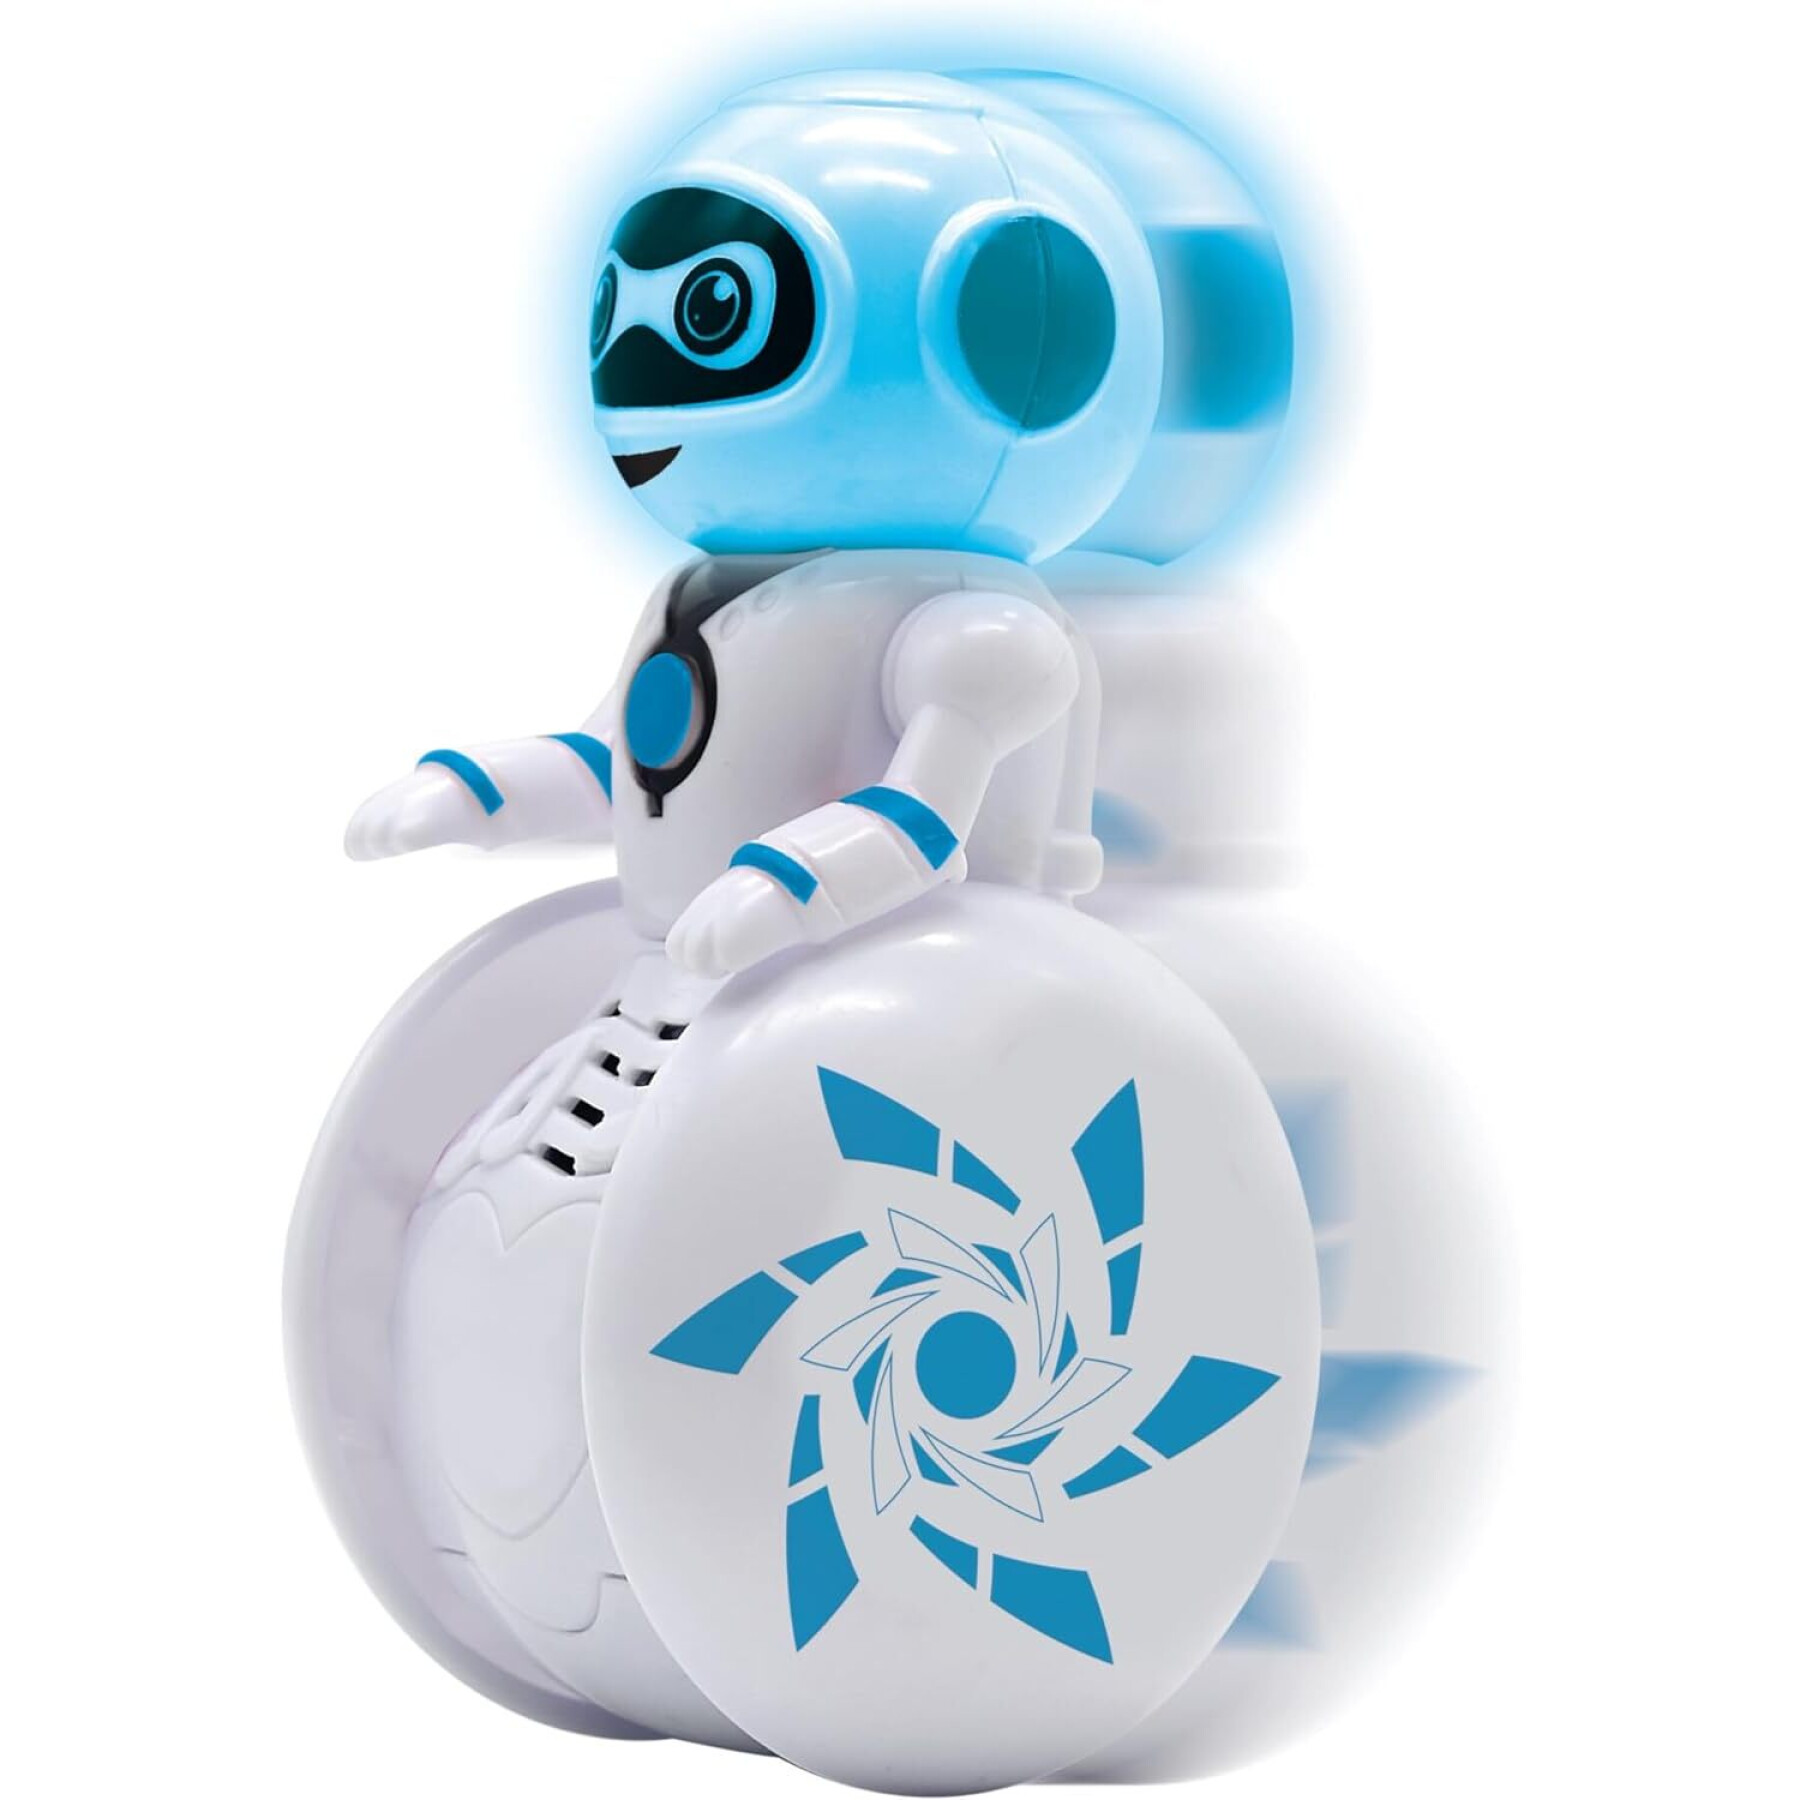 Robô de uma roda perfeitamente equilibrado com efeitos sonoros e luminosos Lexibook Powerman® Roller